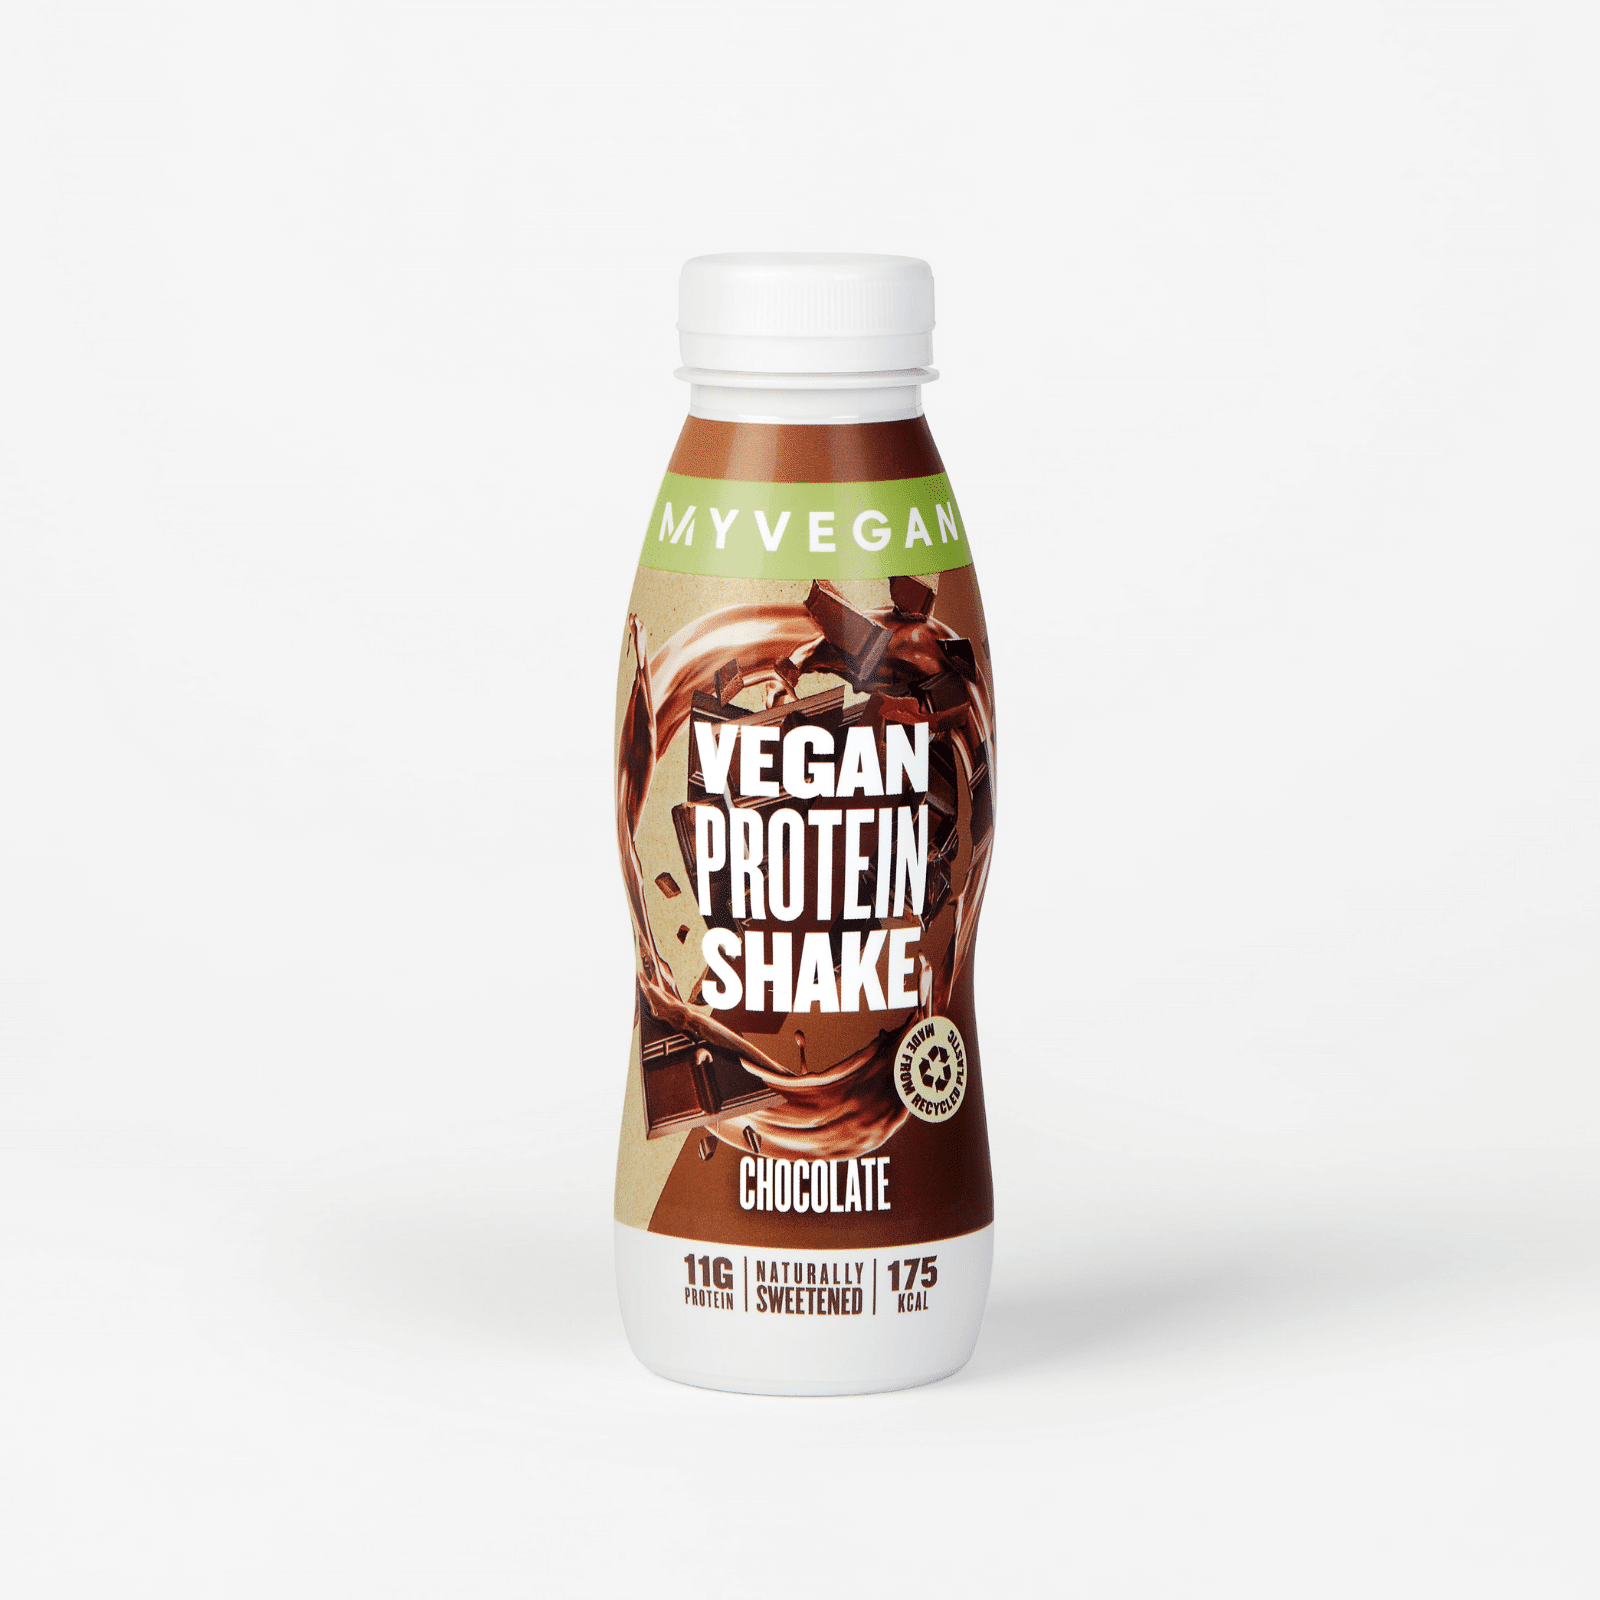 Myvegan Veganer Protein Shake (Probe) - Schokolade